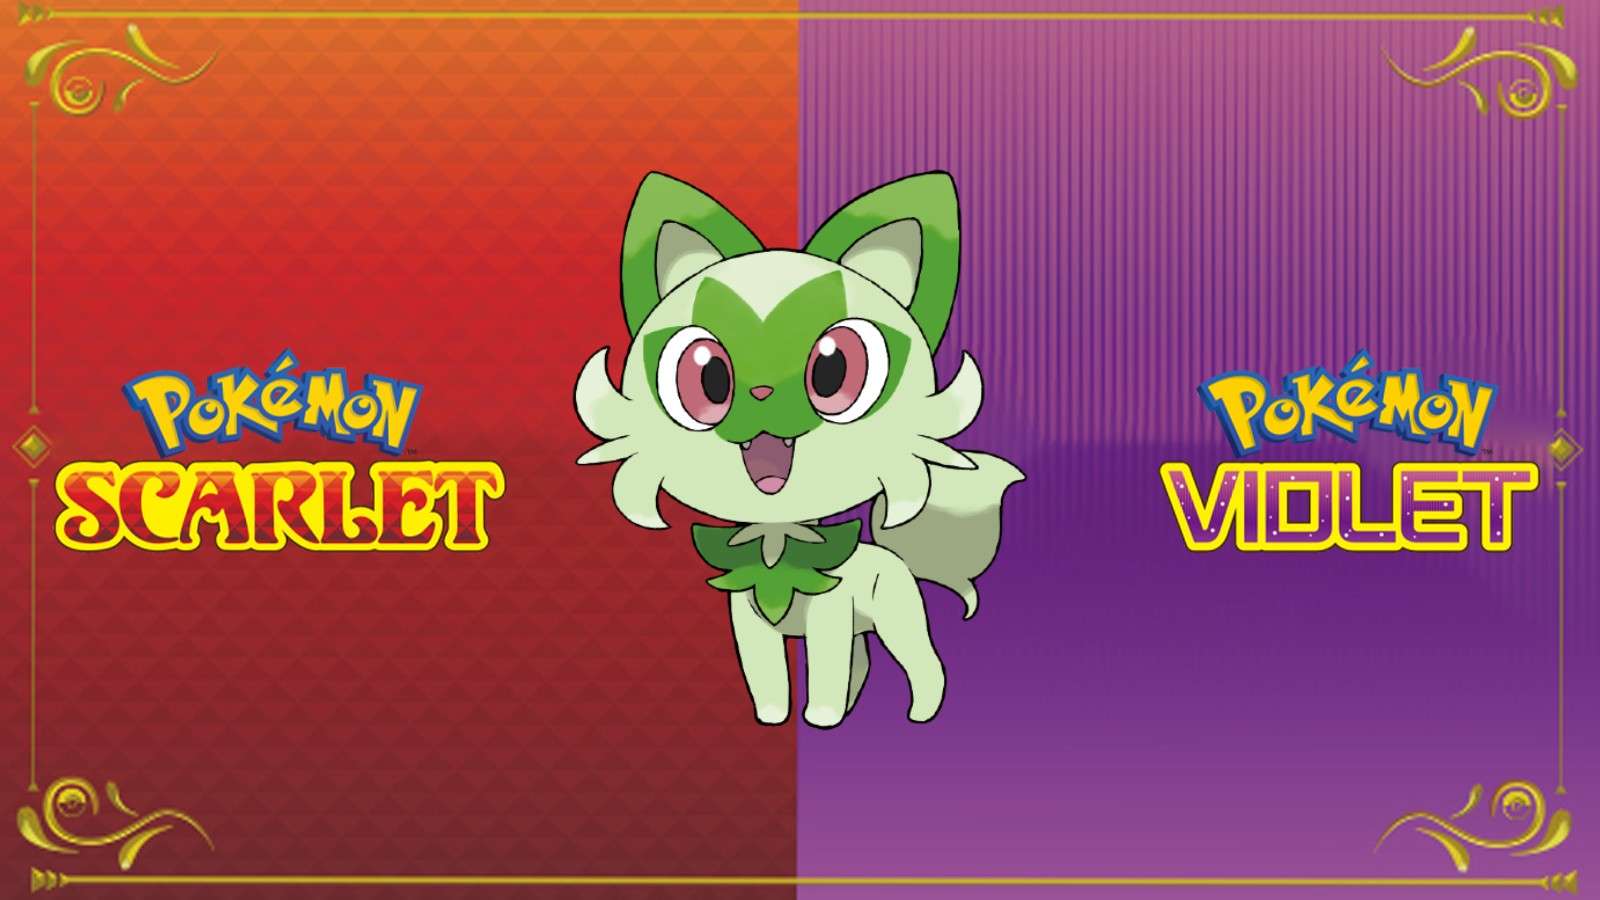 Sprigatito Pokemon Scarlet & Violet